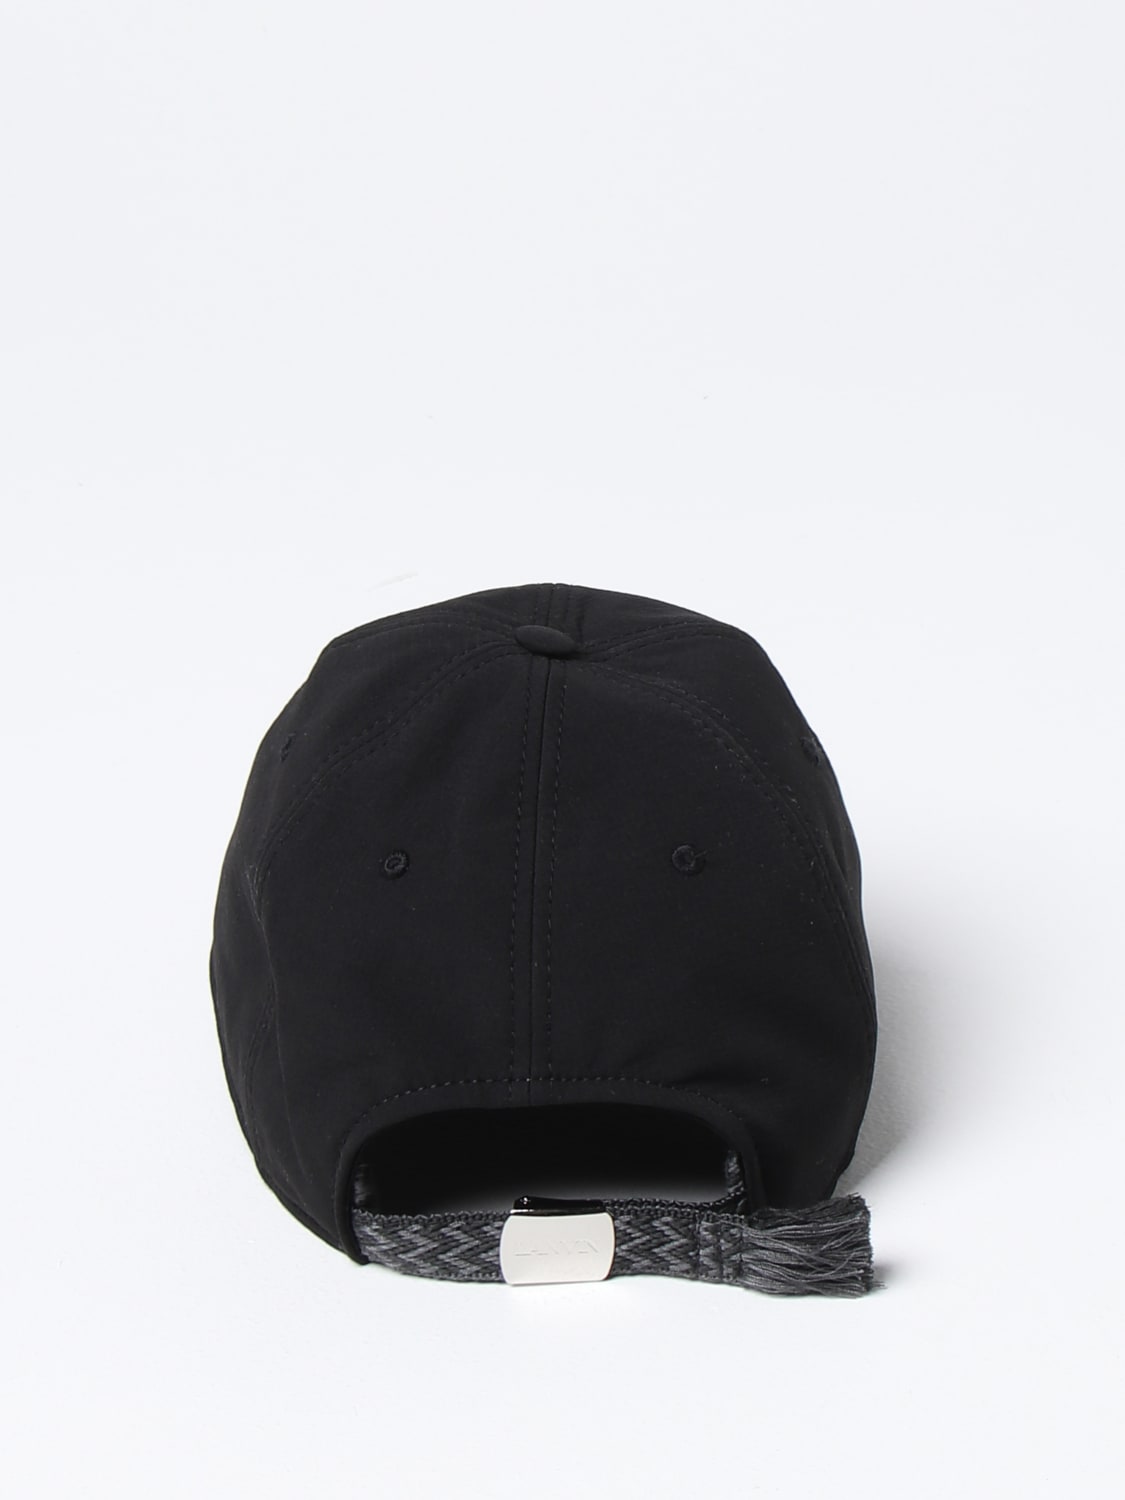 LANVIN: hat for man Black | Lanvin hat online on GIGLIO.COM